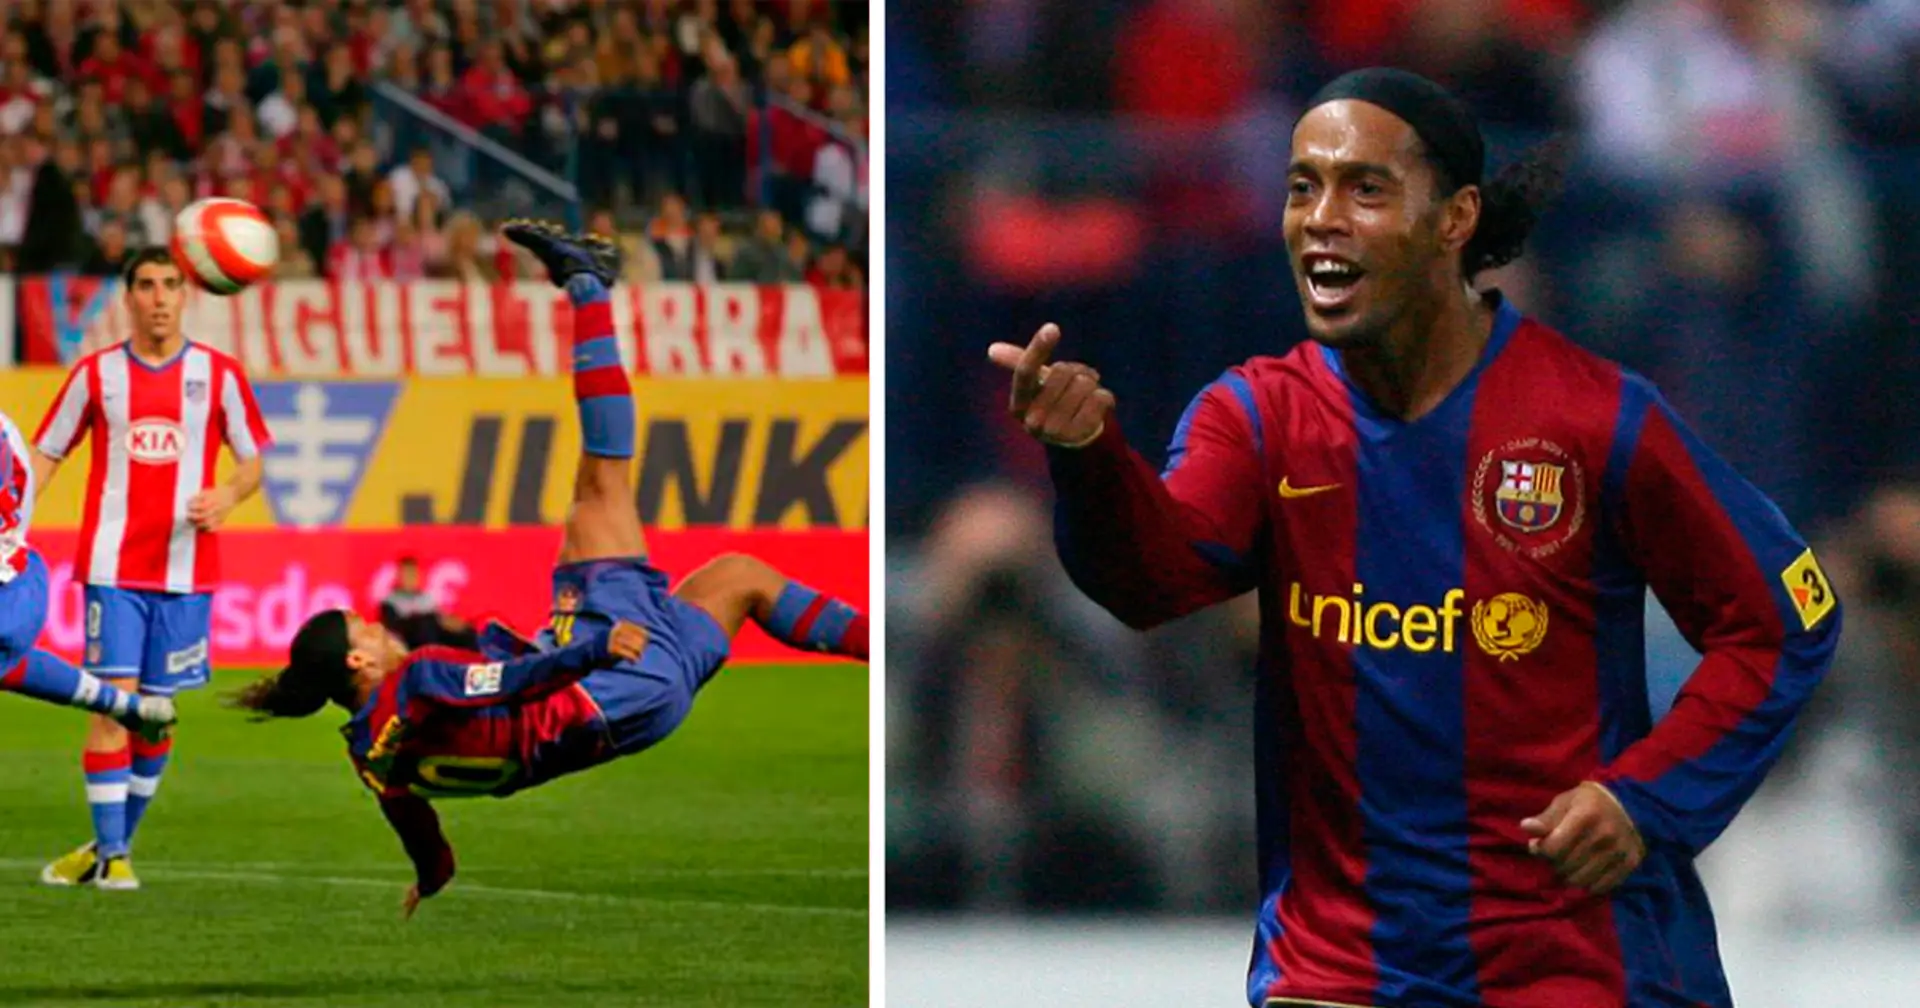 Un día como hoy, hace 16 años, Ronaldinho marcó su último gol con el Barcelona... ¡y vaya gol!